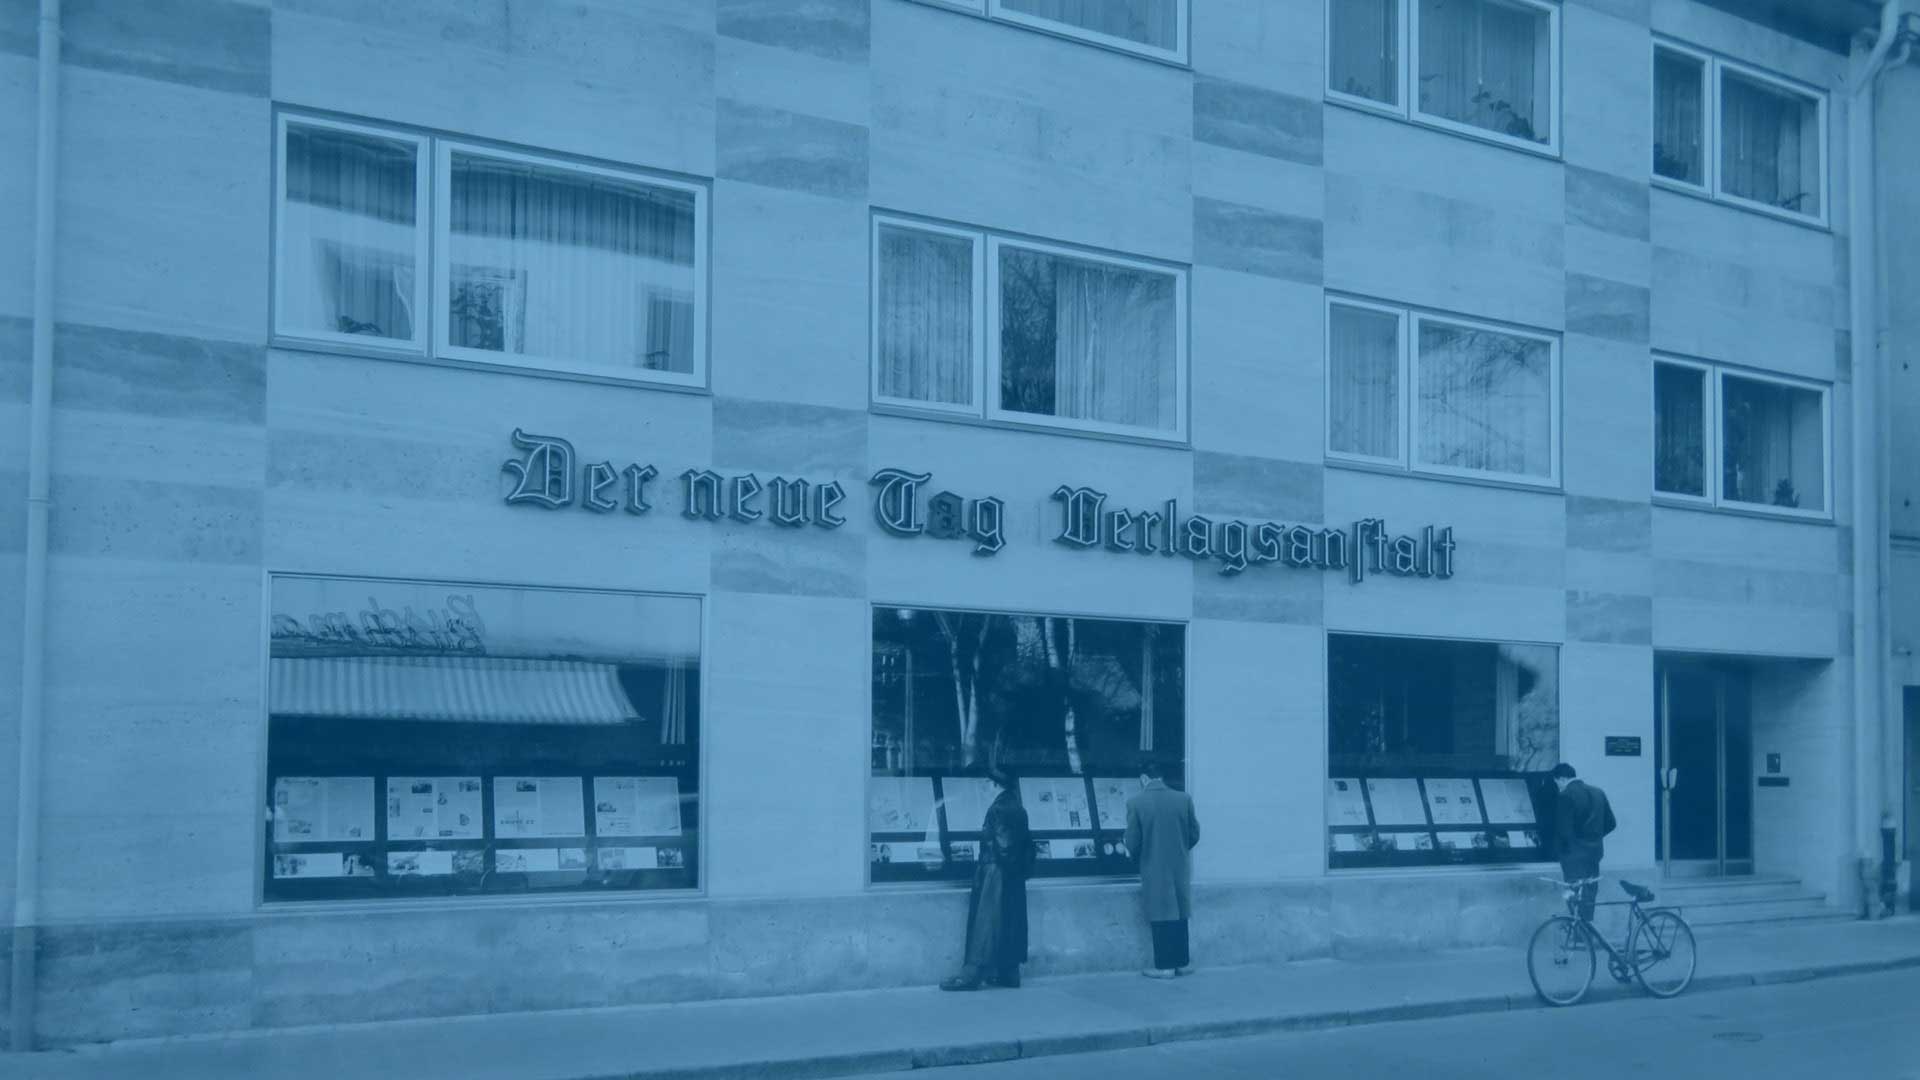 Bild aus der Geschichte von Oberpfalz Medien mit dem alten Verlagshaus mit der Aufschrift „Der neue Tag Verlagsanstalt“.